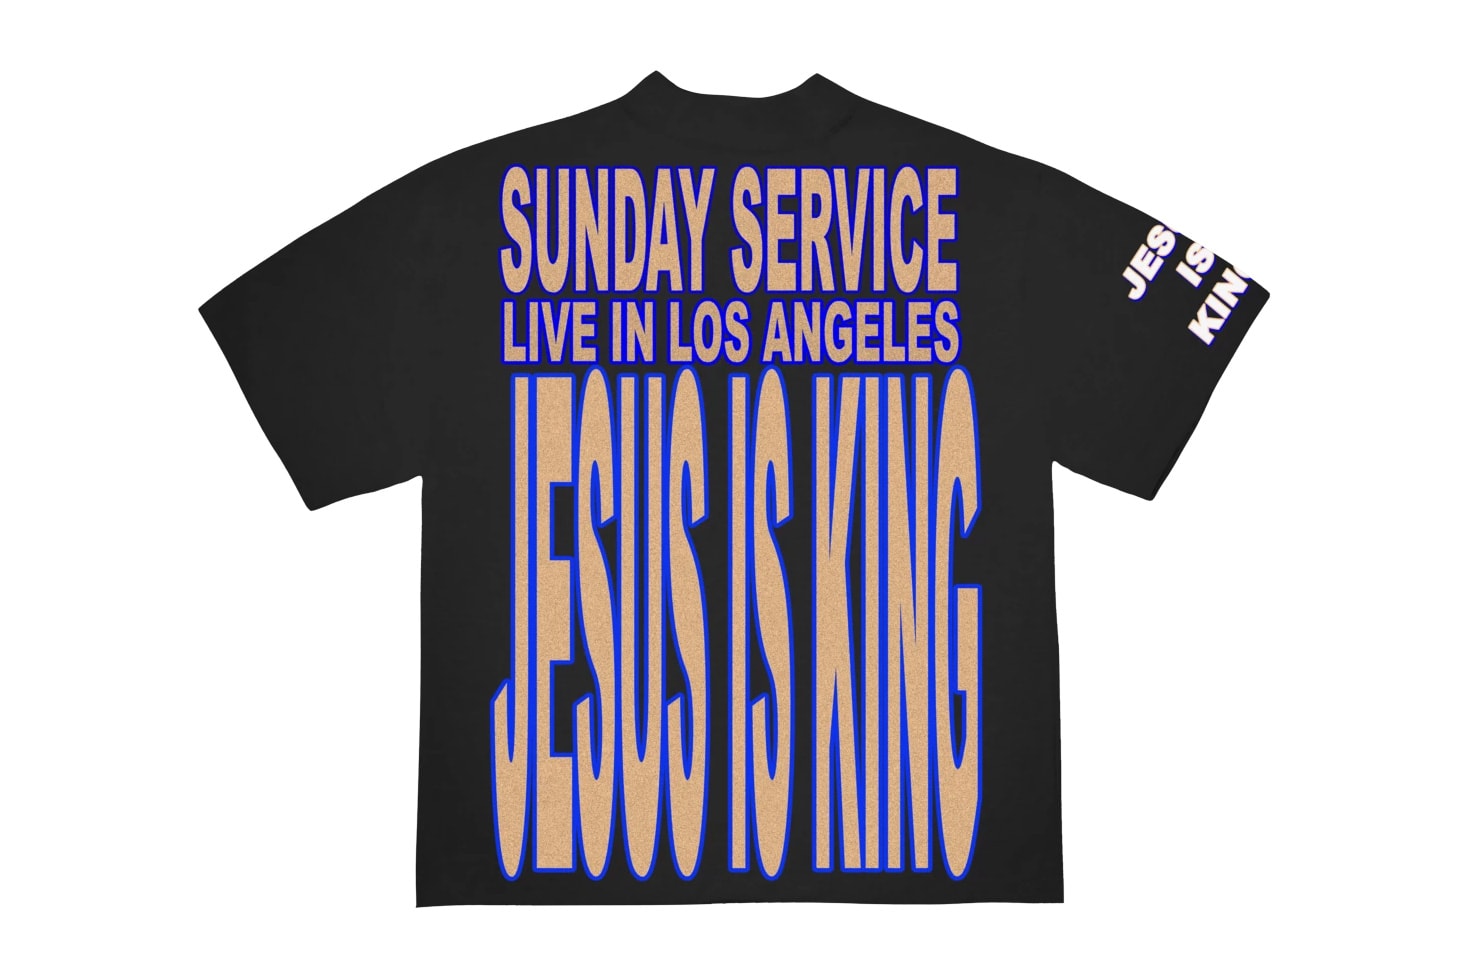 カニエウェストがAWGEデザインのJesus Is Kingのマーチを発表 AWGE For 'Jesus Is King' Merchandise Release Kanye West Sunday Service album merch Los Angeles pop-up pre-order yeezy garments drop date price info buy now 